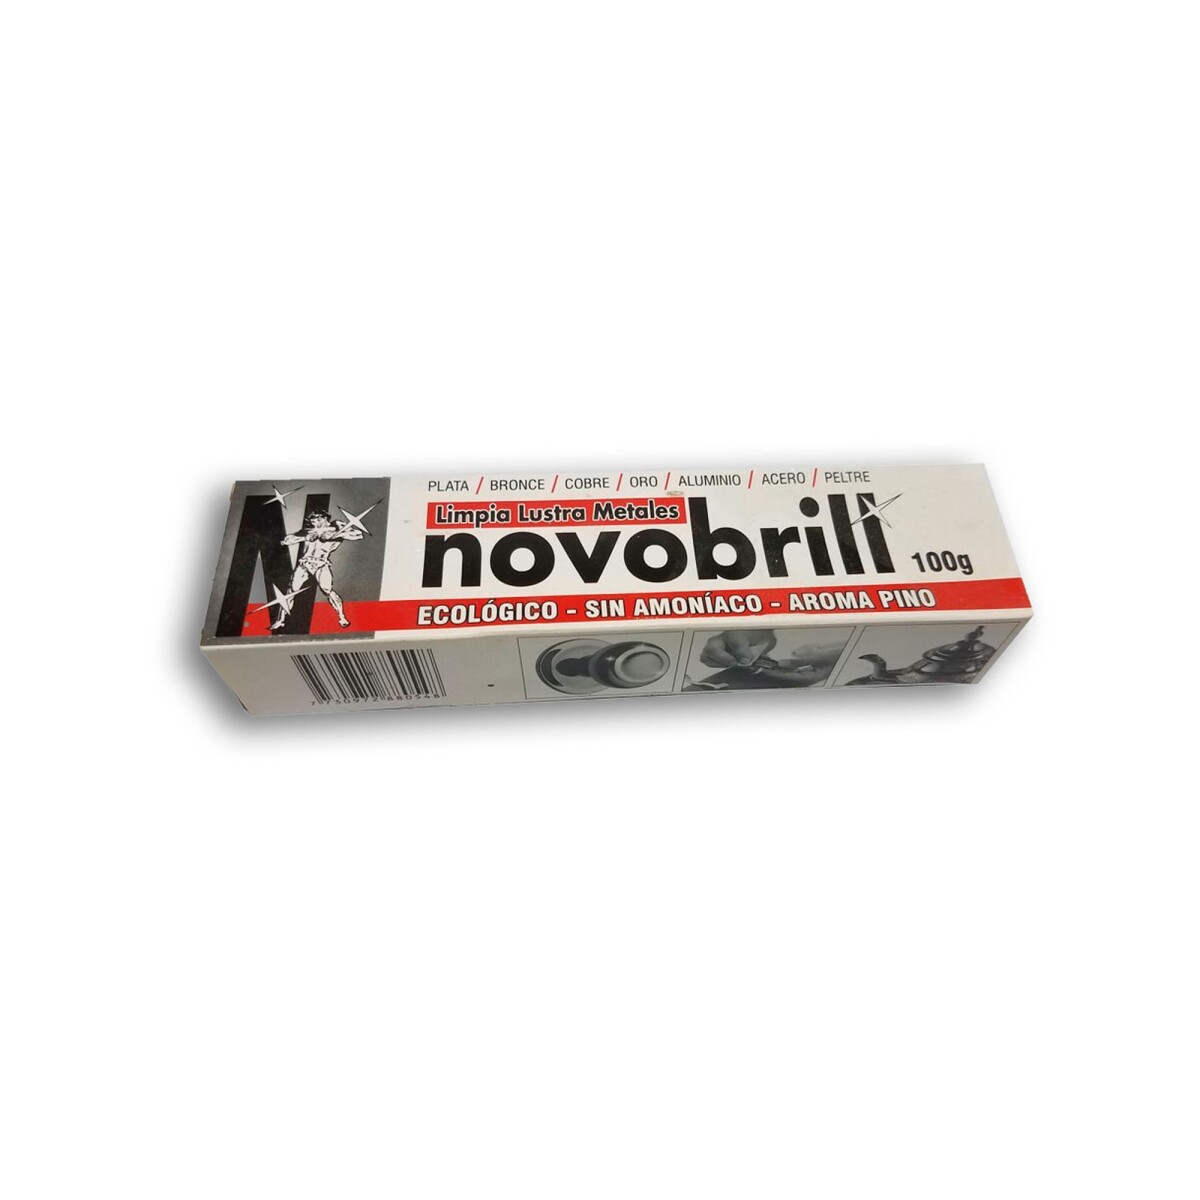 NovoBrill 100cc (brilla metal) 